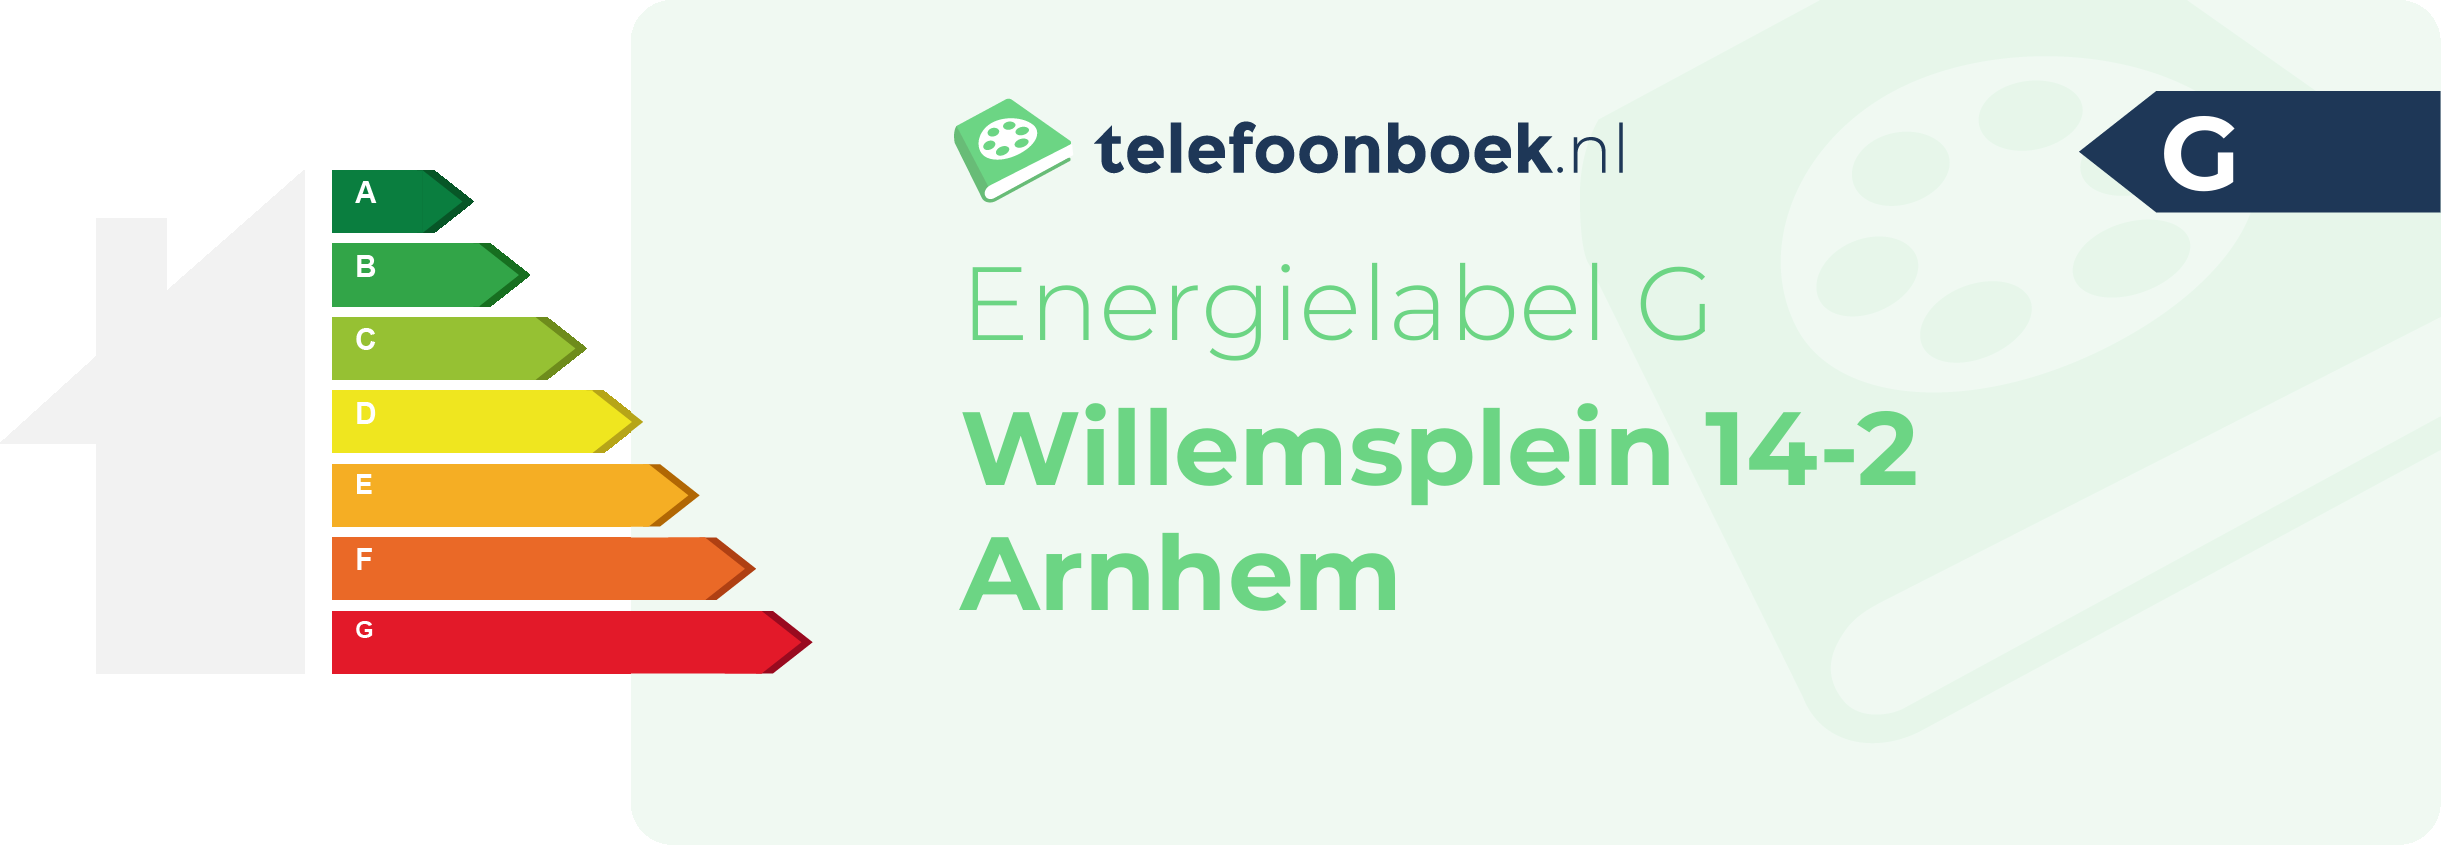 Energielabel Willemsplein 14-2 Arnhem